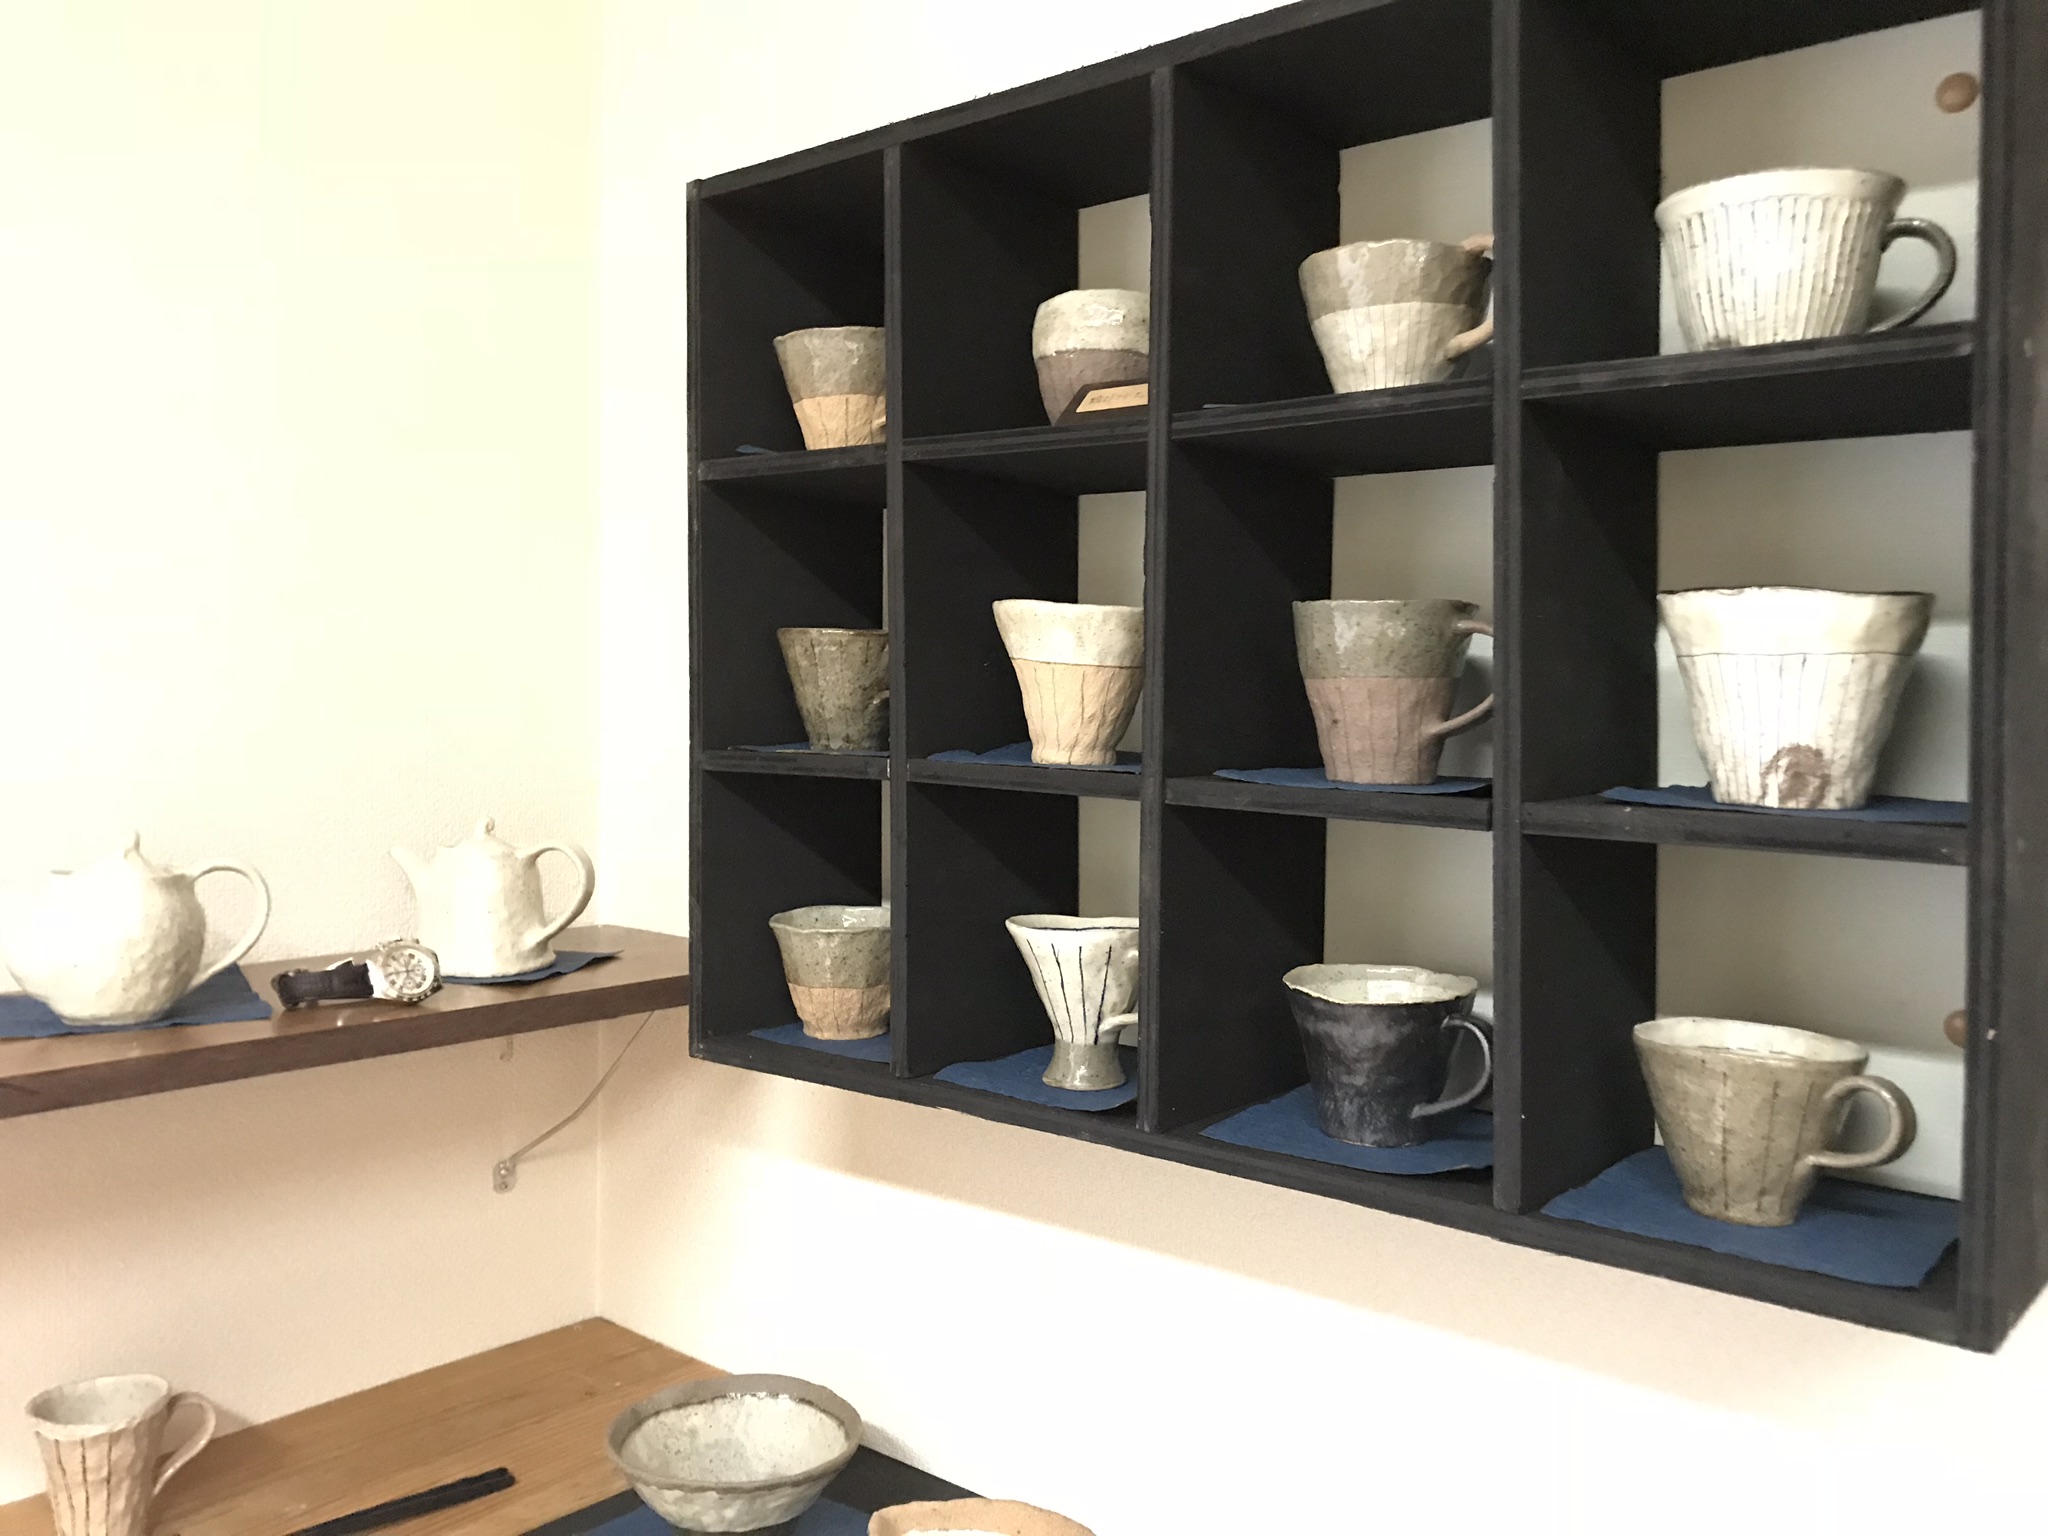 福津市で手びねり陶芸をやっています。月2回の陶芸教室も行なっています。興味のあるかたはぜひチェックし